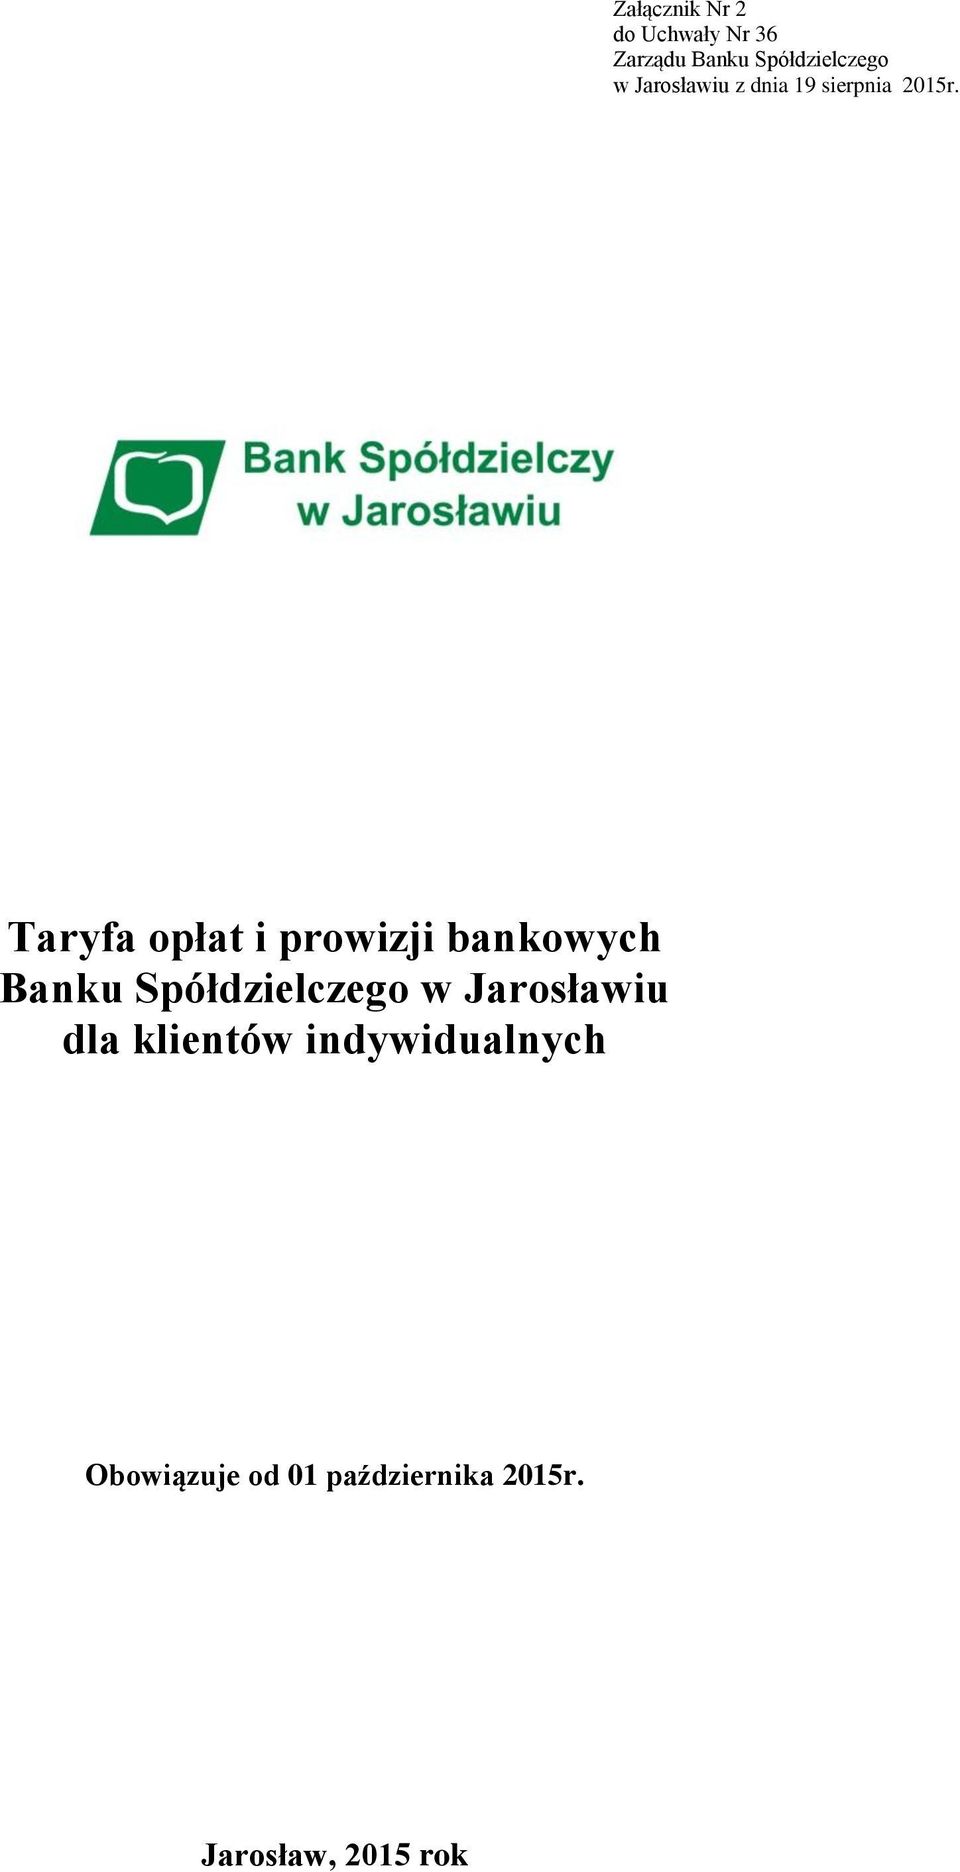 Taryfa opłat i prowizji bankowych Banku Spółdzielczego w